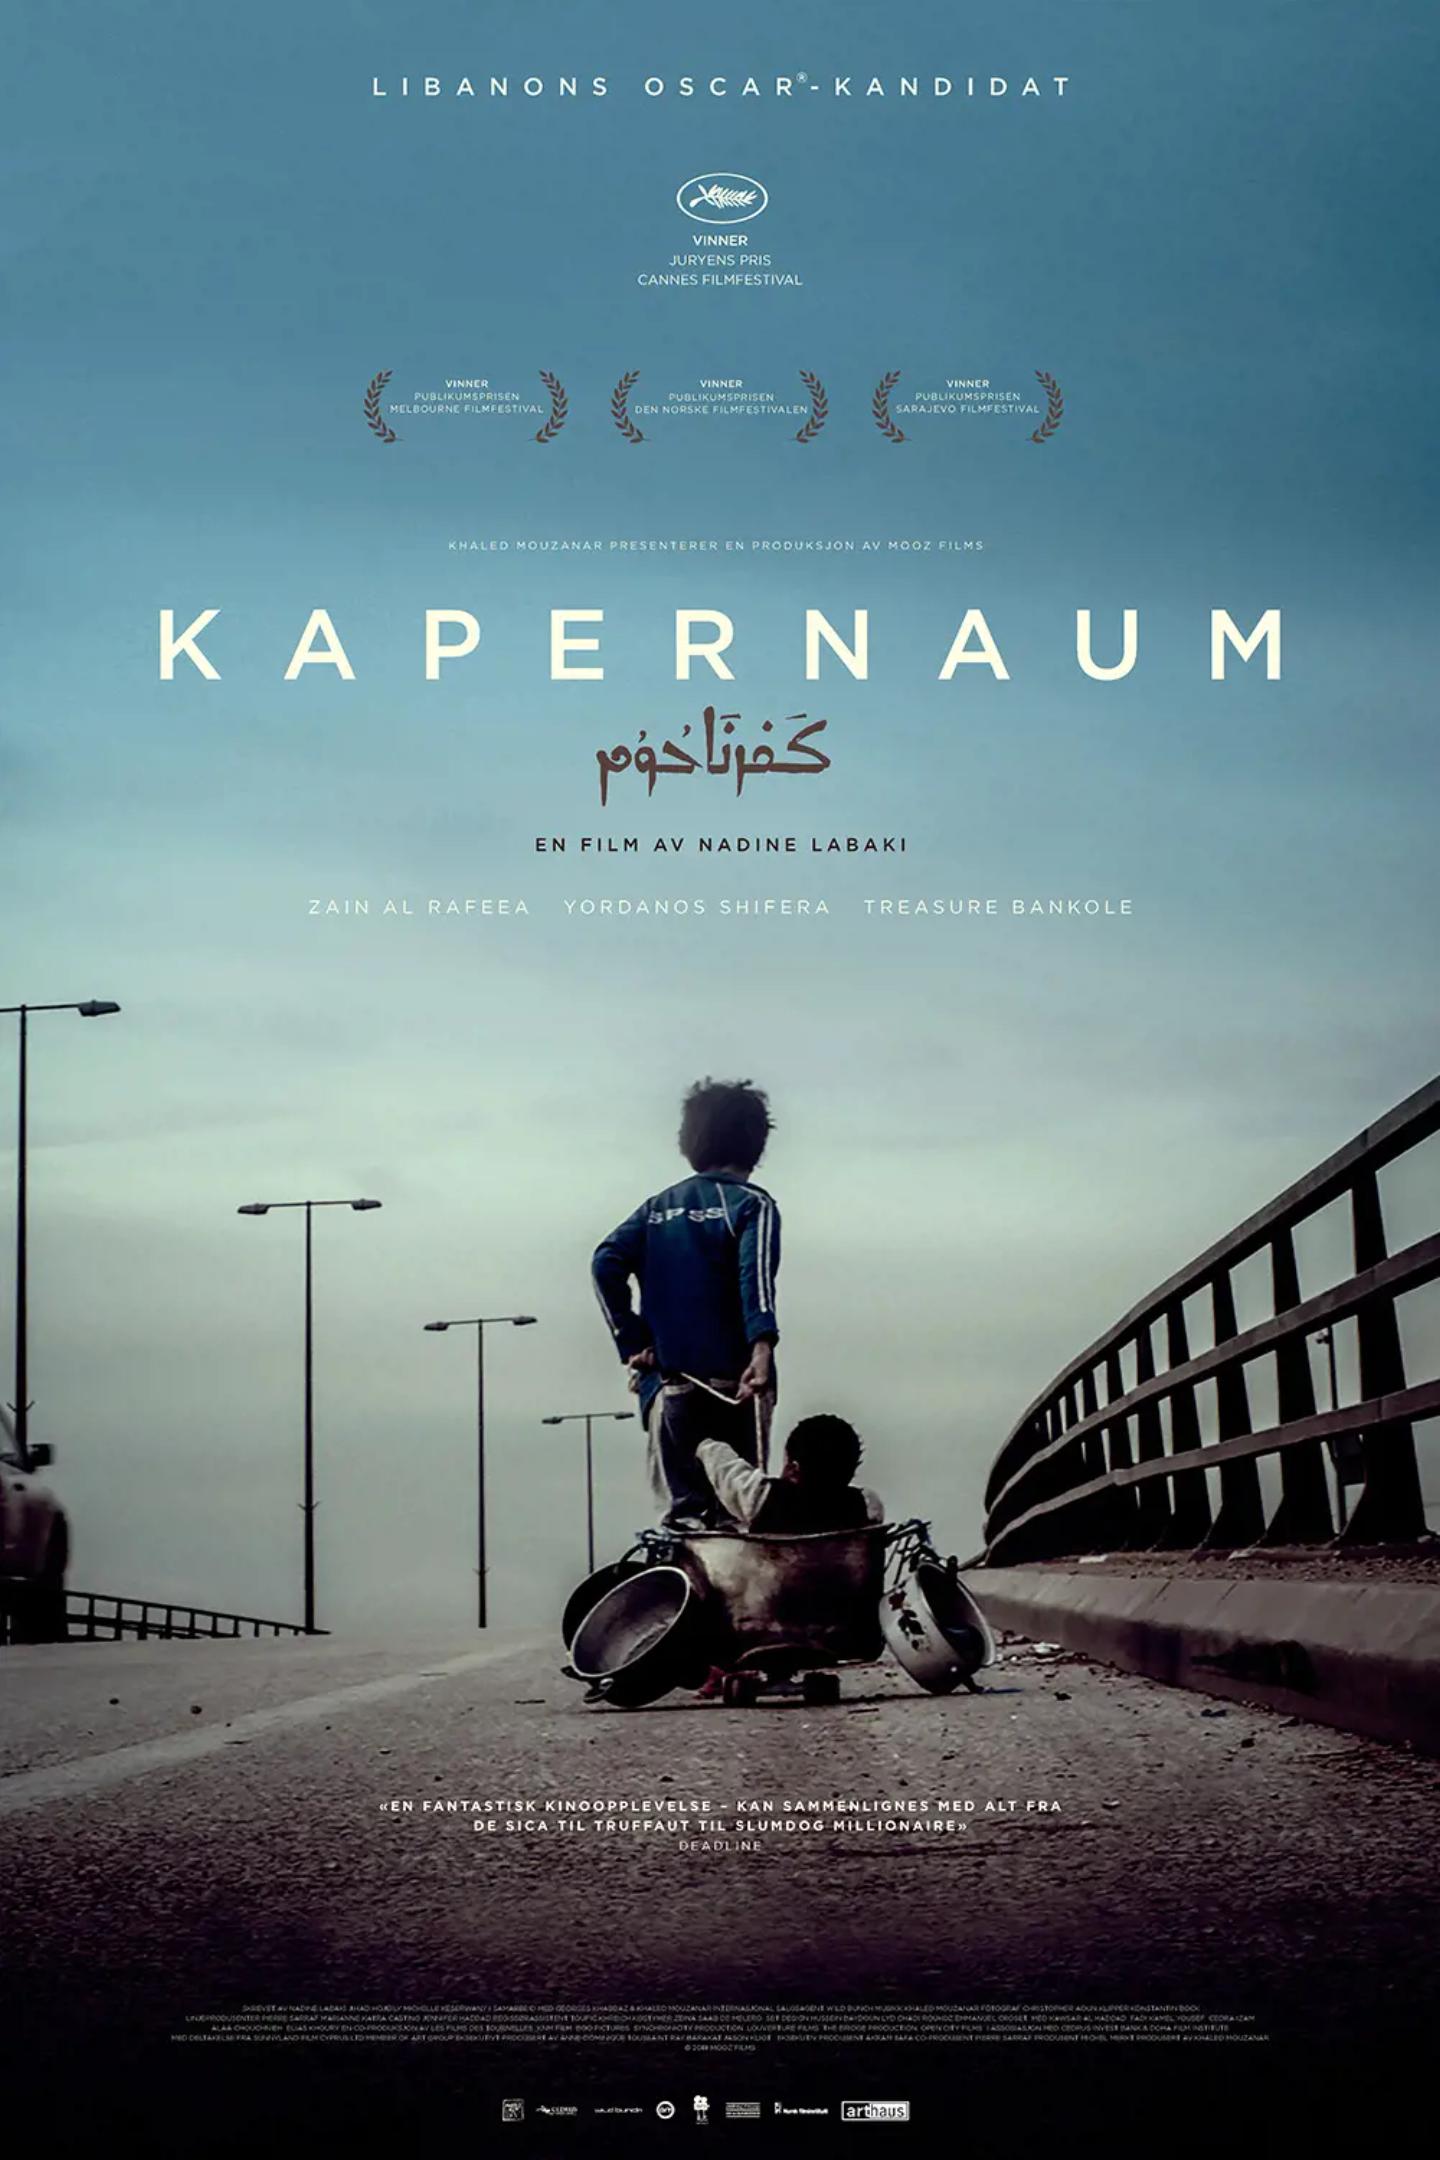 Plakat for 'Kapernaum'